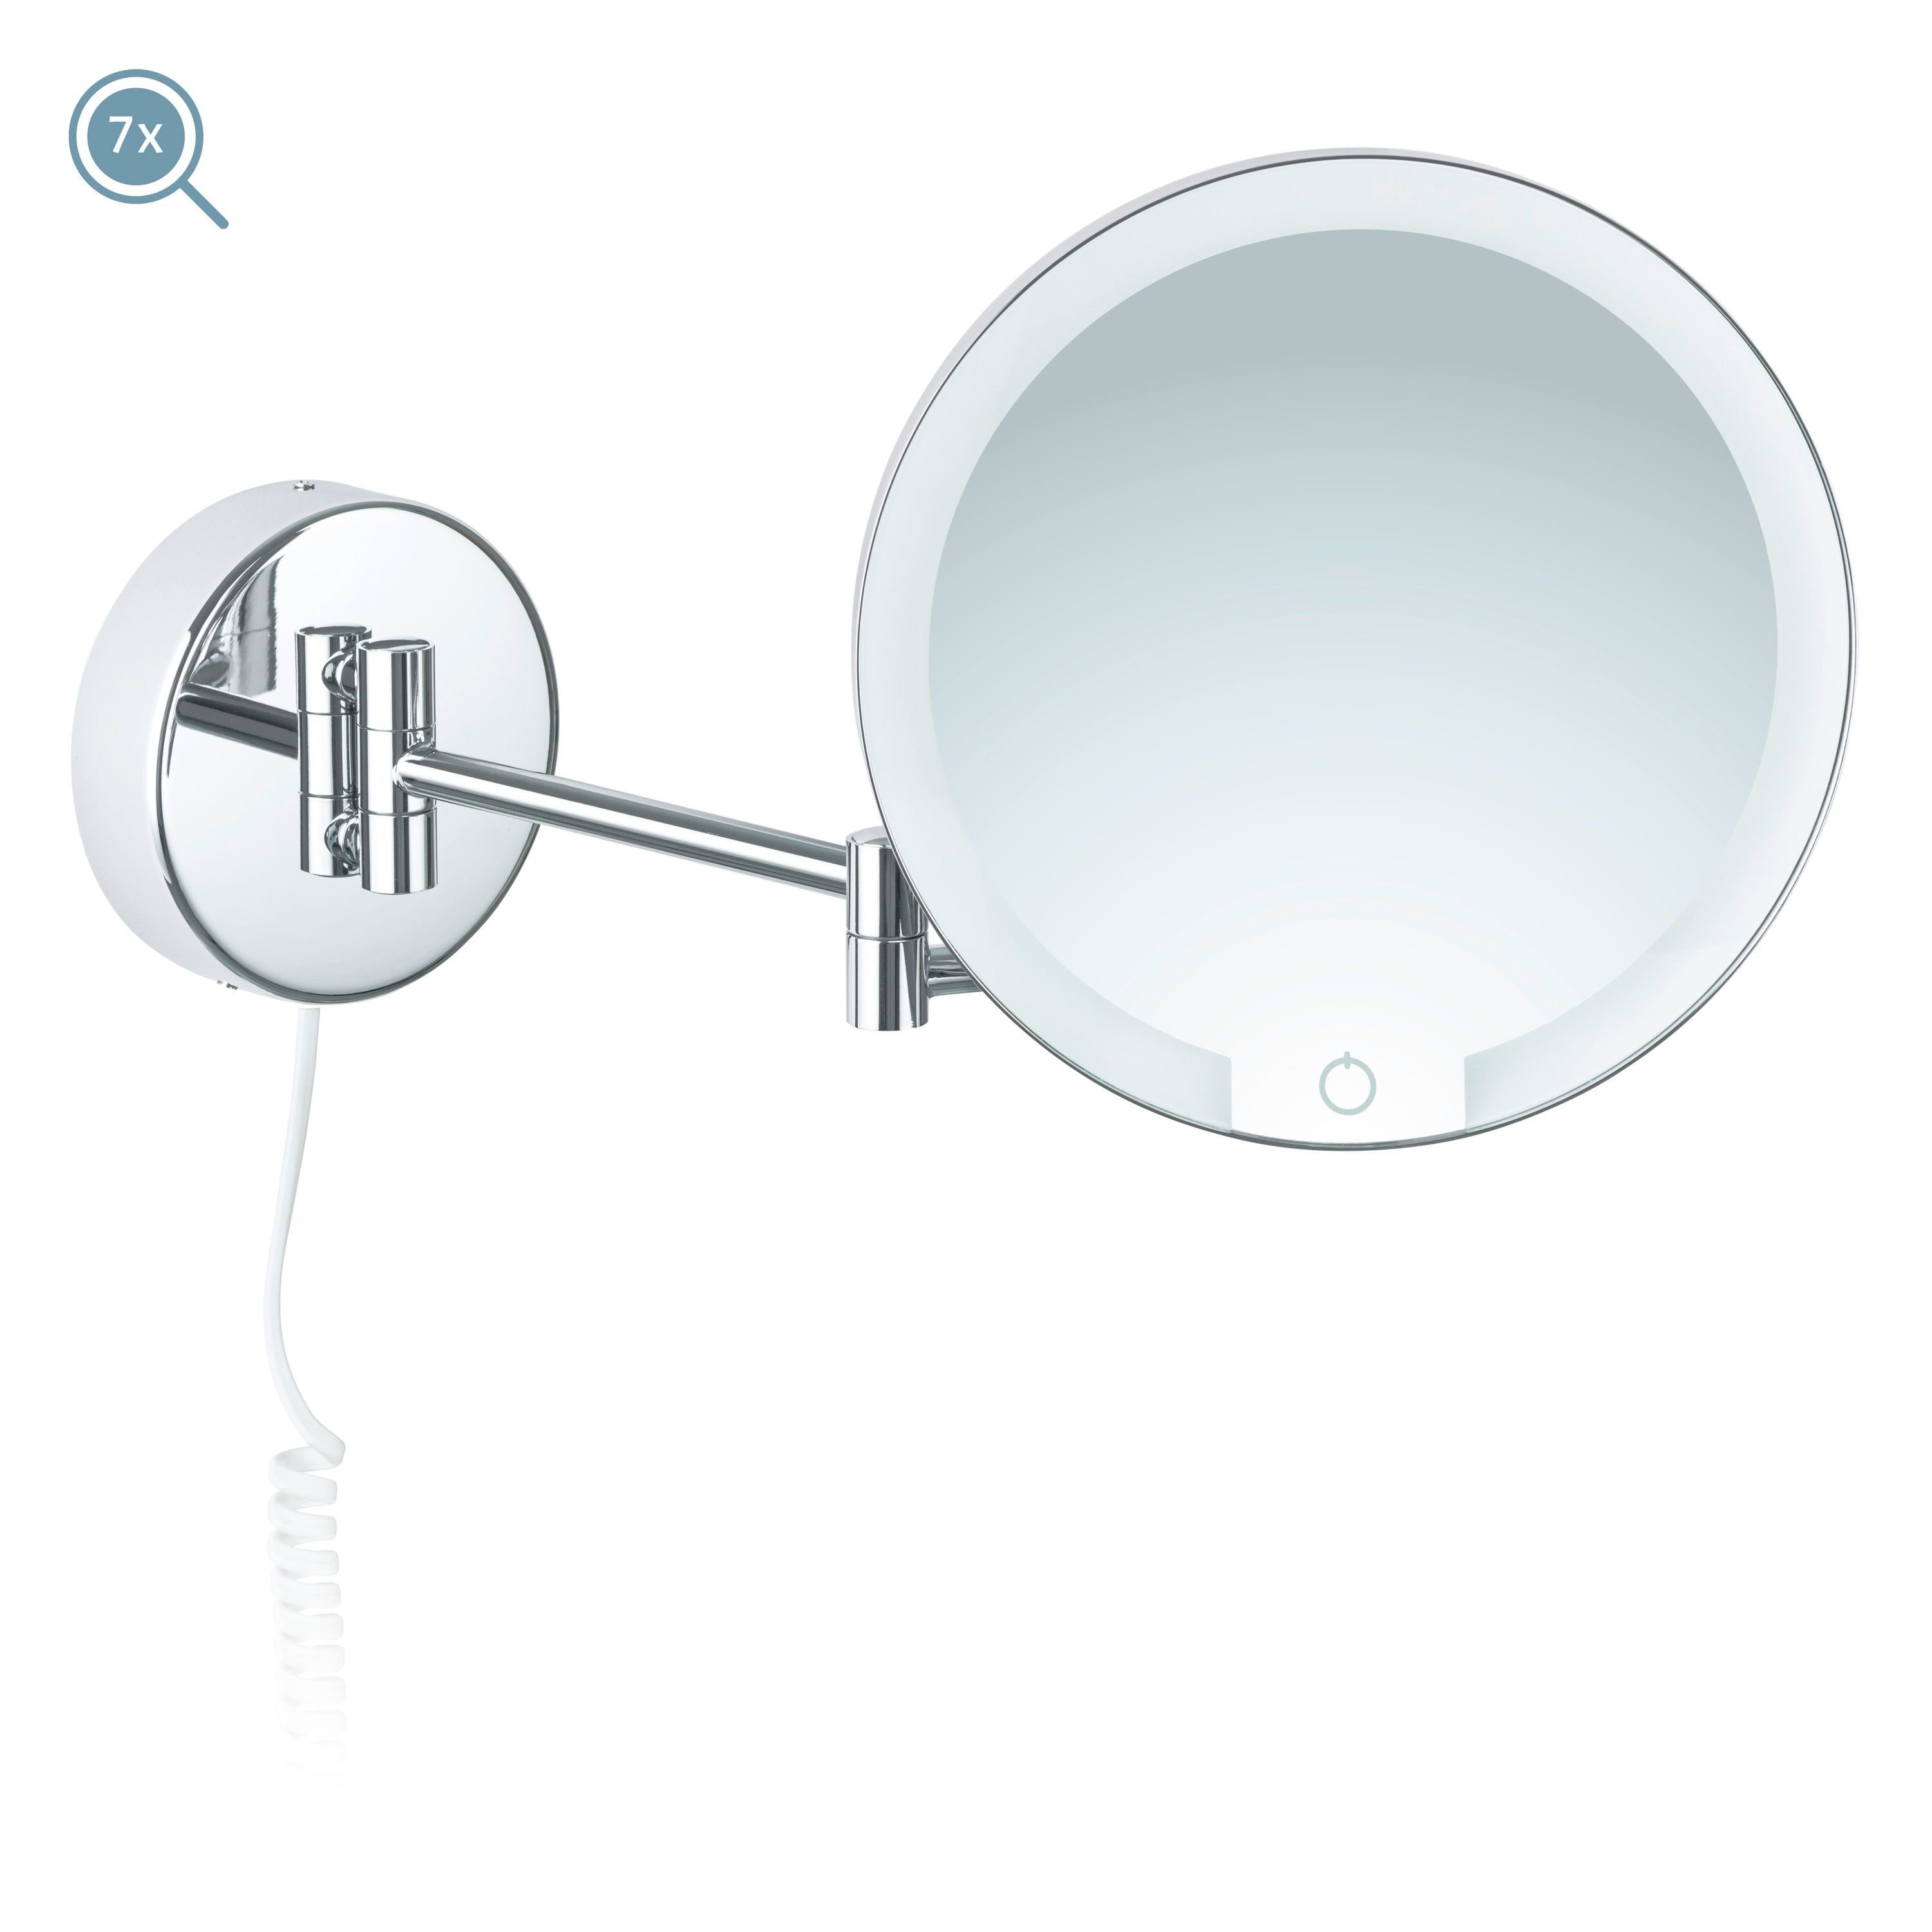 Kosmetikspiegel Kosmetikspiegel weißes Libaro Siena, LED 7x Vergrößerung Dimmer Kabel Auto-off